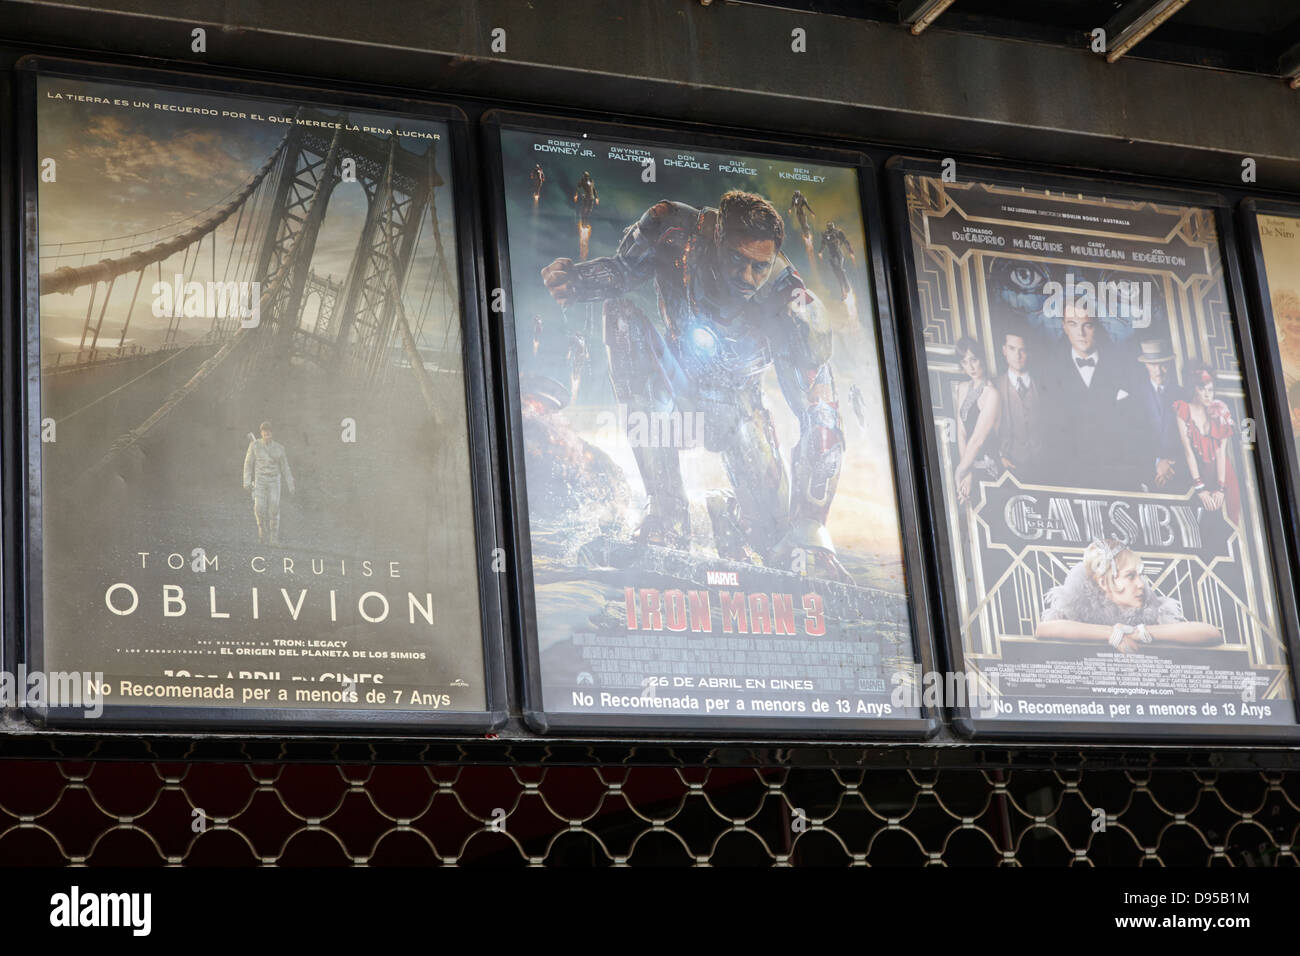 Holywood film posters traduit en espagnol à l'extérieur d'un cinéma multiplexe barcelone catalogne espagne Banque D'Images